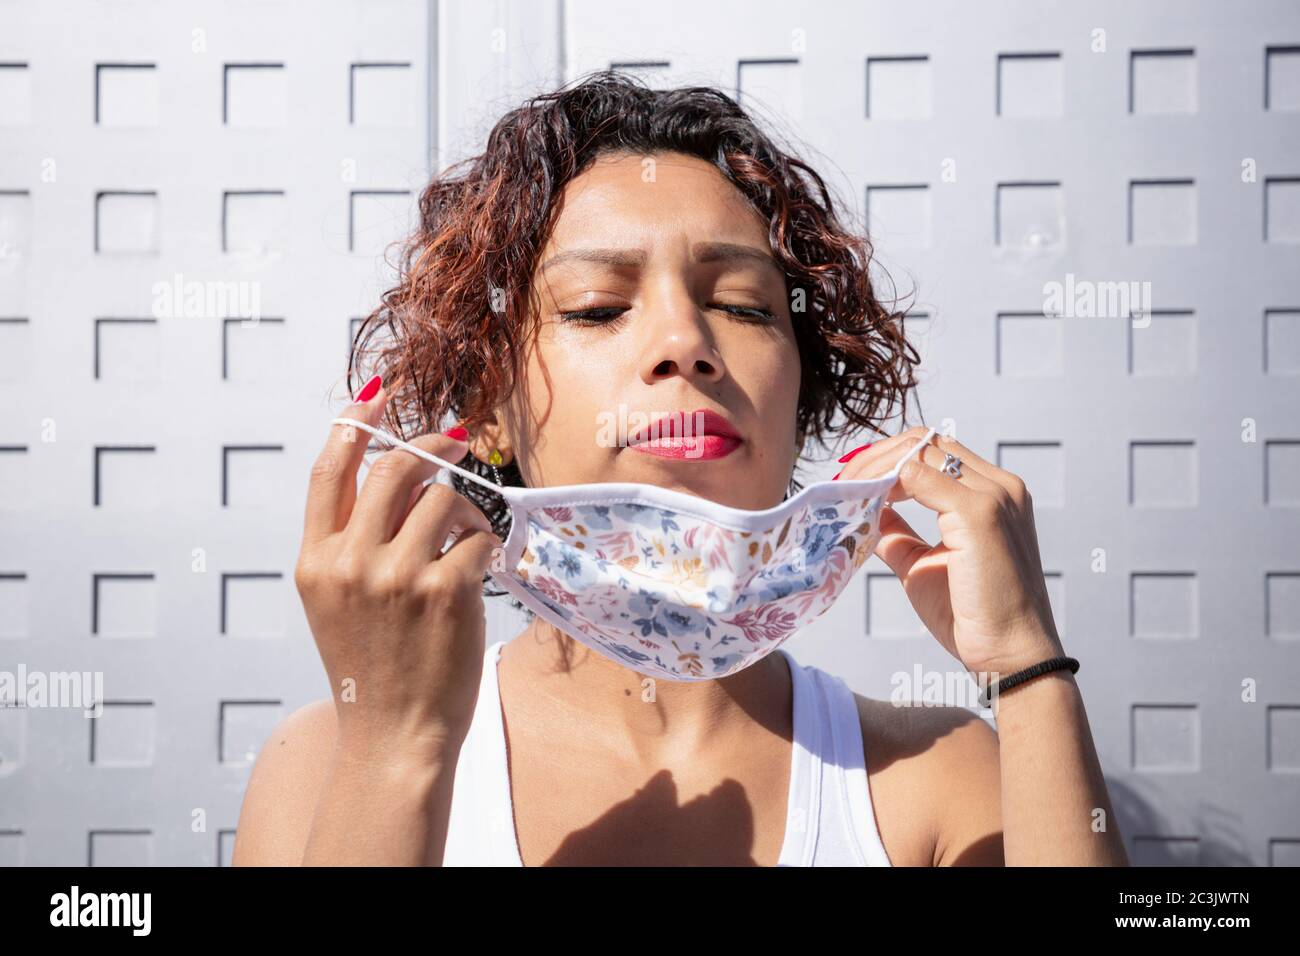 Attraktive lateinamerikanische Frau, die auf einer Gesichtsmaske auf der Straße. Konzept der neuen Normalität und der sozialen Distanzierung. Stockfoto